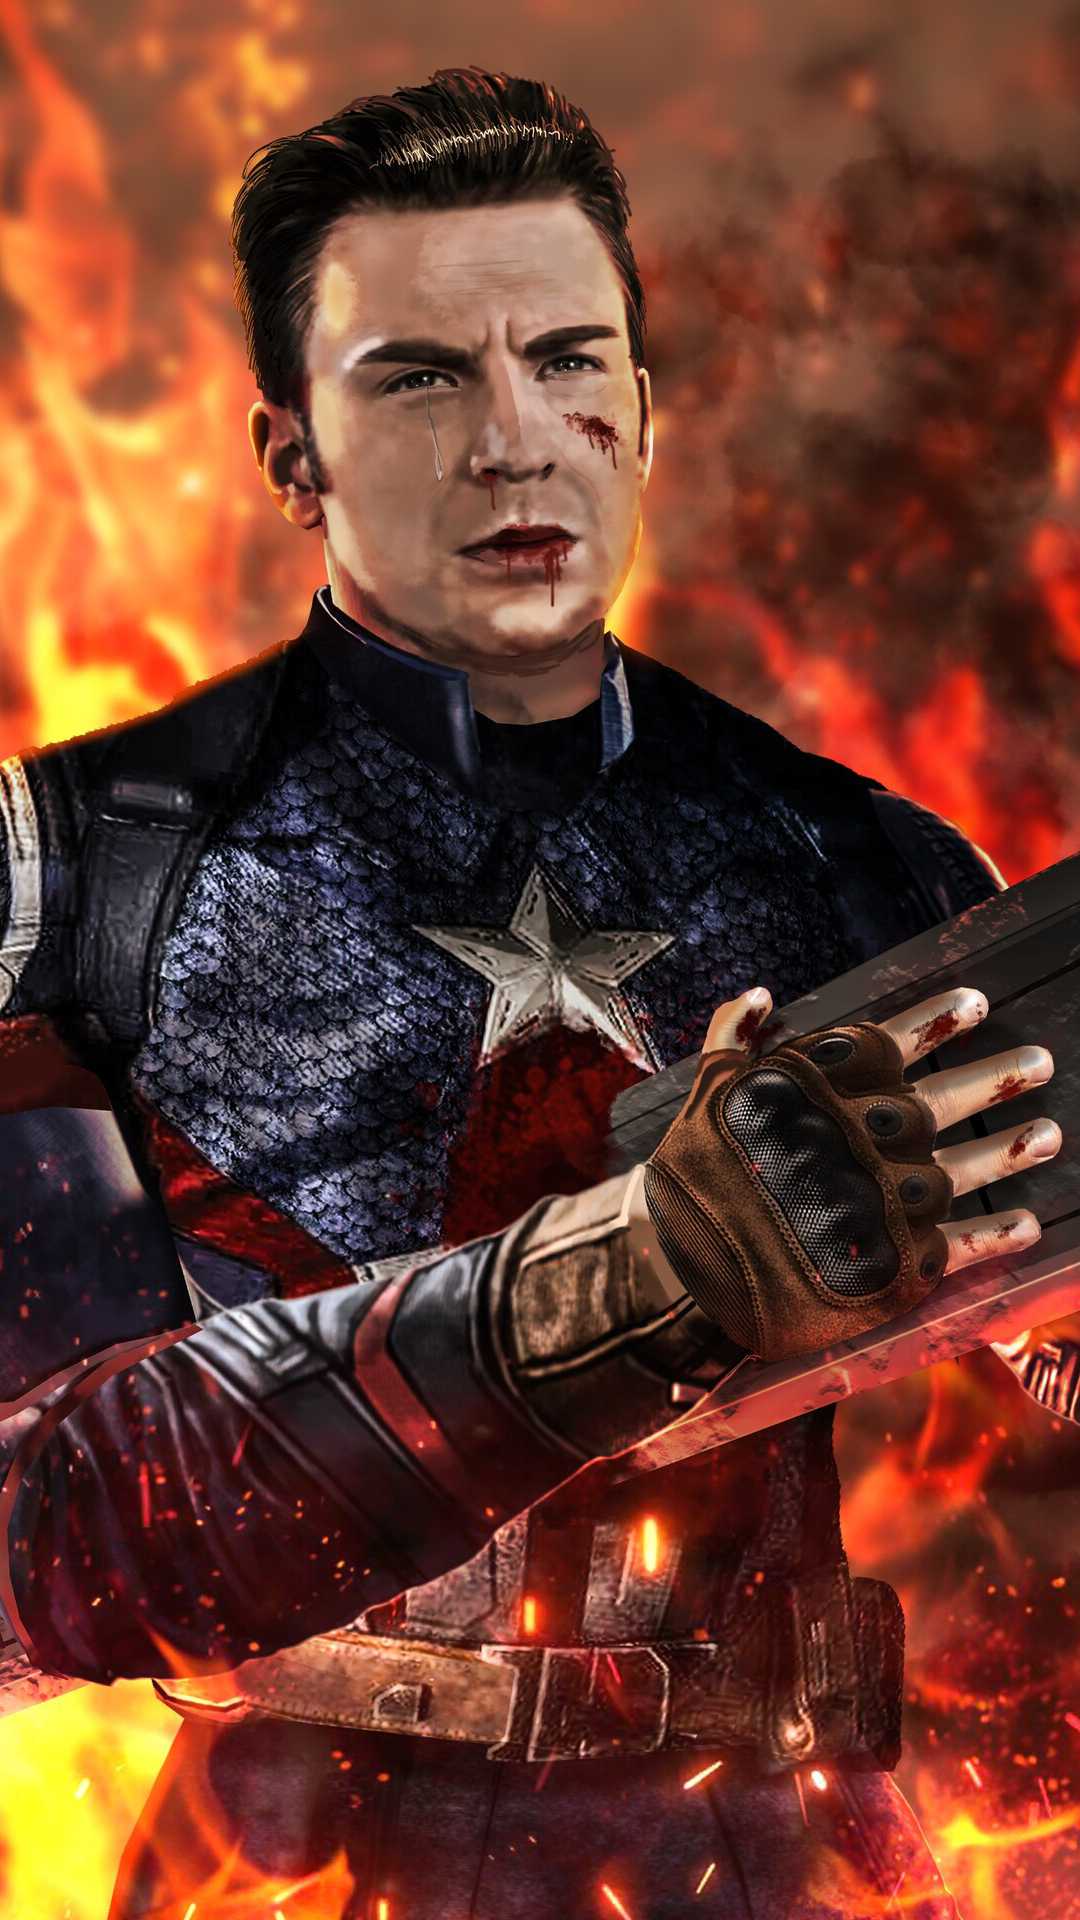 Avengers Endgame Captain America Last Fight IPhone Wallpaper - IPhone  Wallpapers : iPhone Wallpapers